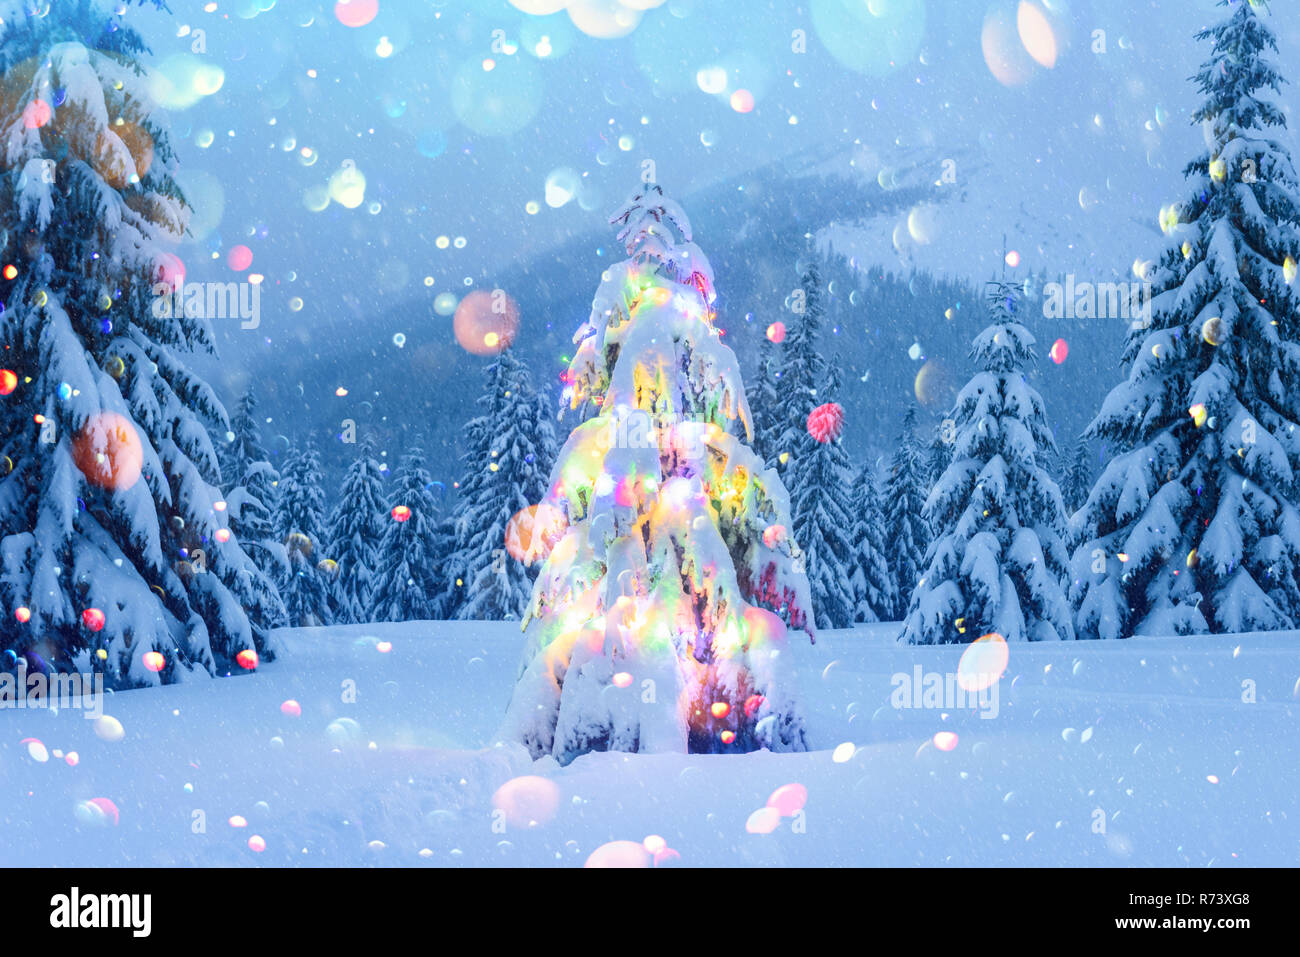 Maison de vacances paysage avec arbre de Noël, la neige et les lumières en hiver les montagnes. Fête du nouvel an Carte postale Collage. Lumière effet bokeh DOF post-traitement Banque D'Images